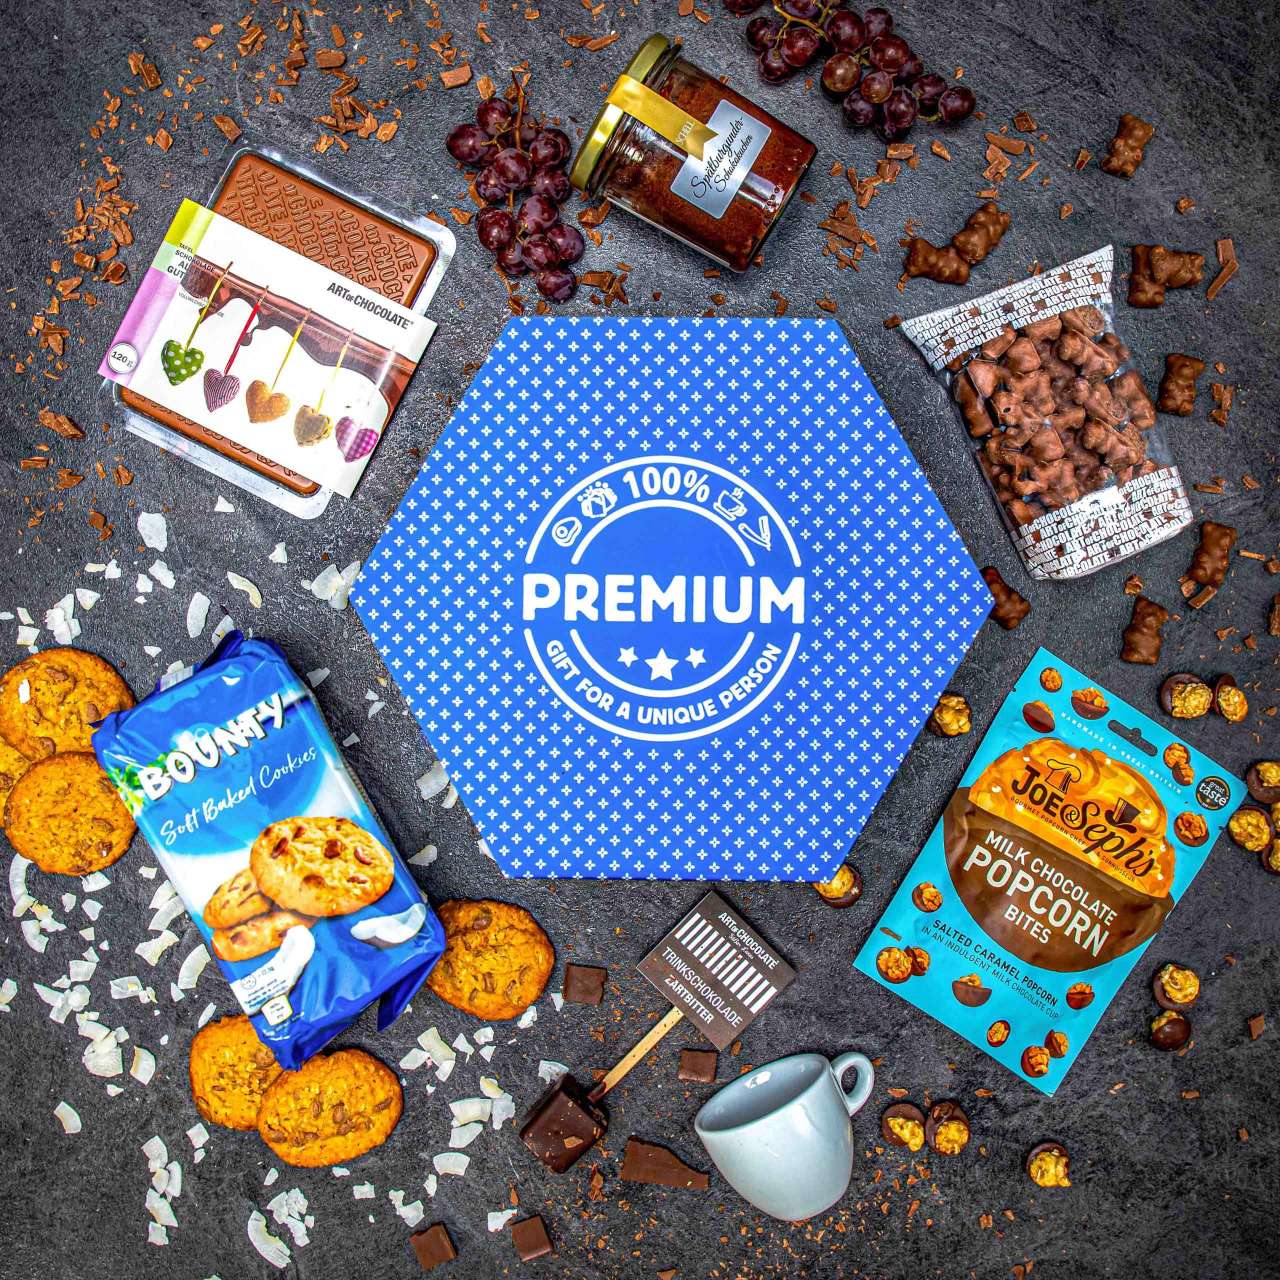 Hexagon plný čokoládových specialit - Modrý